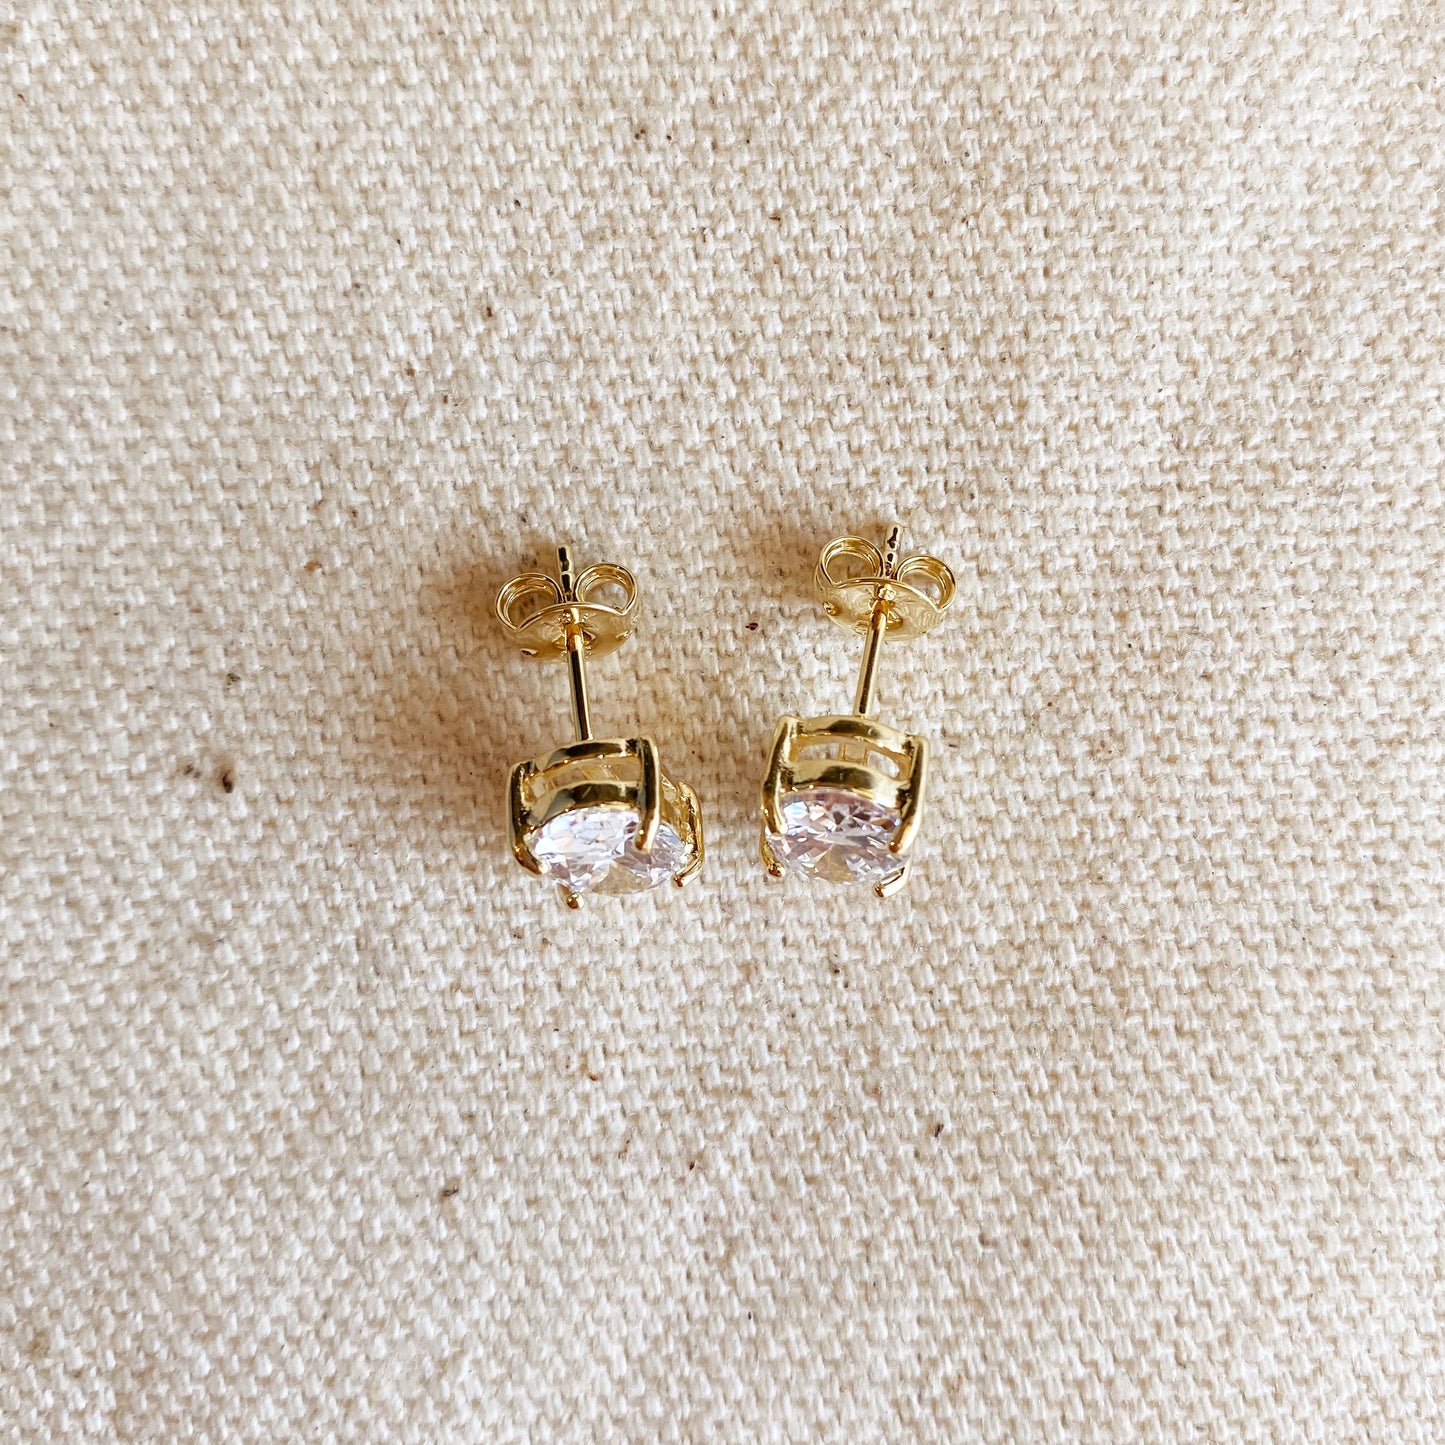 18k Gold Filled Oval Cubic Zirconia Stud Earrings